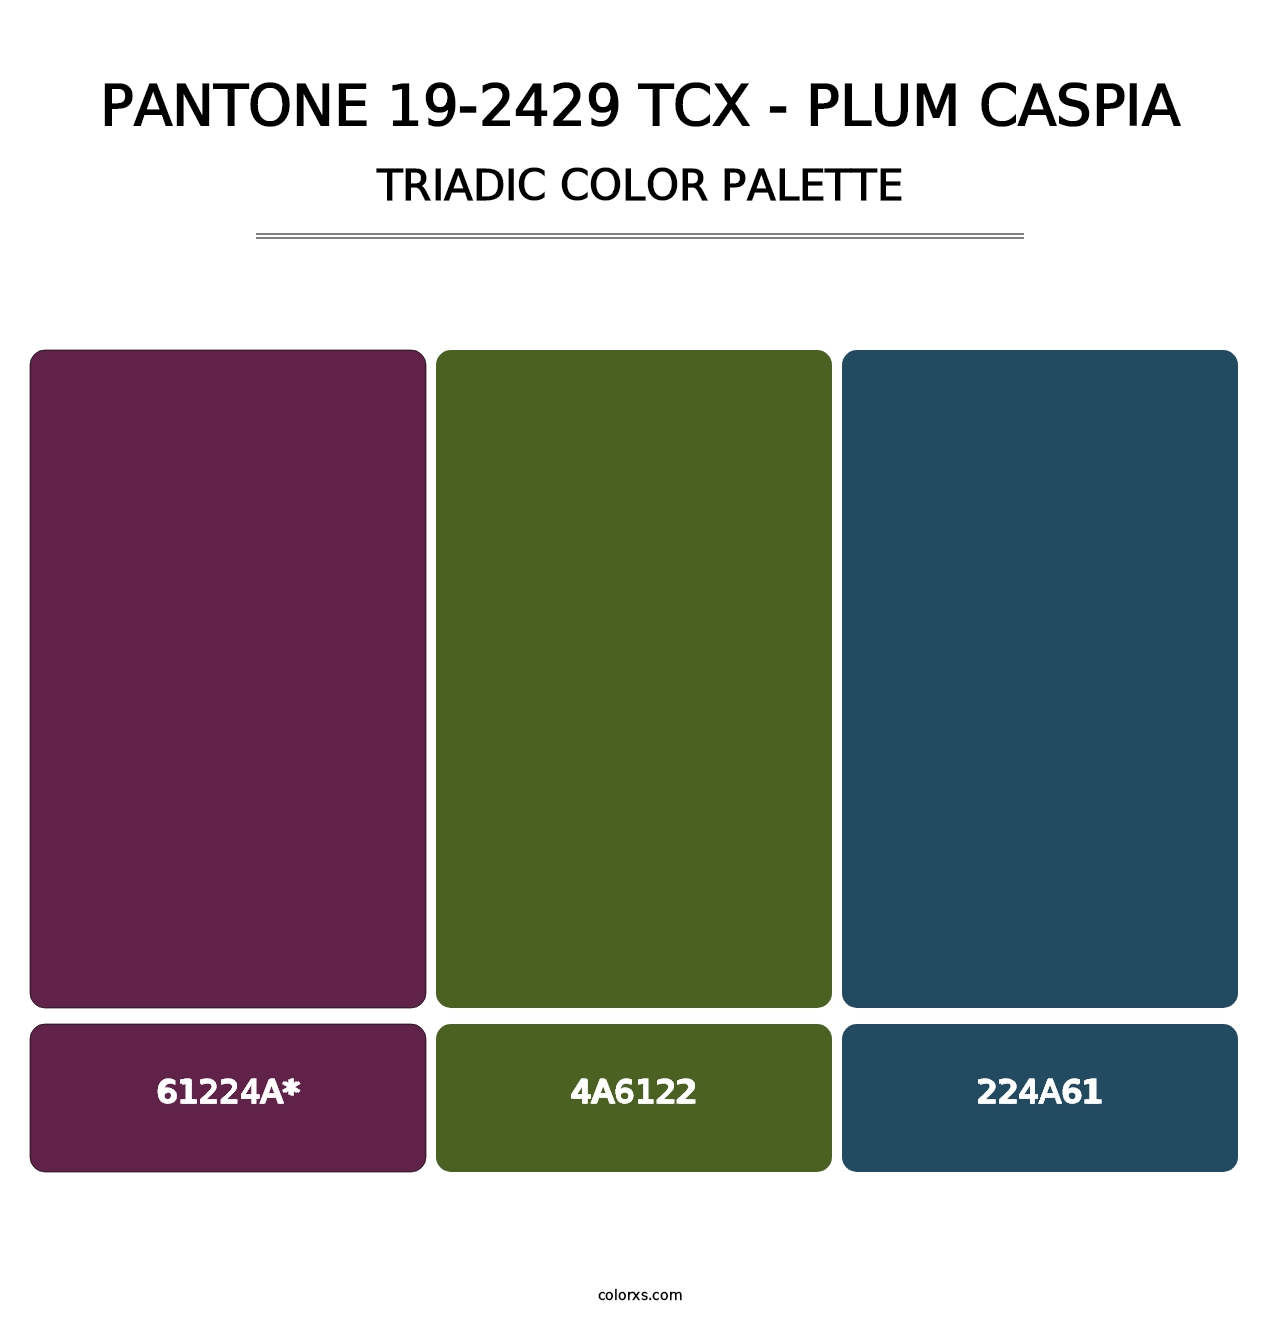 PANTONE 19-2429 TCX - Plum Caspia - Triadic Color Palette